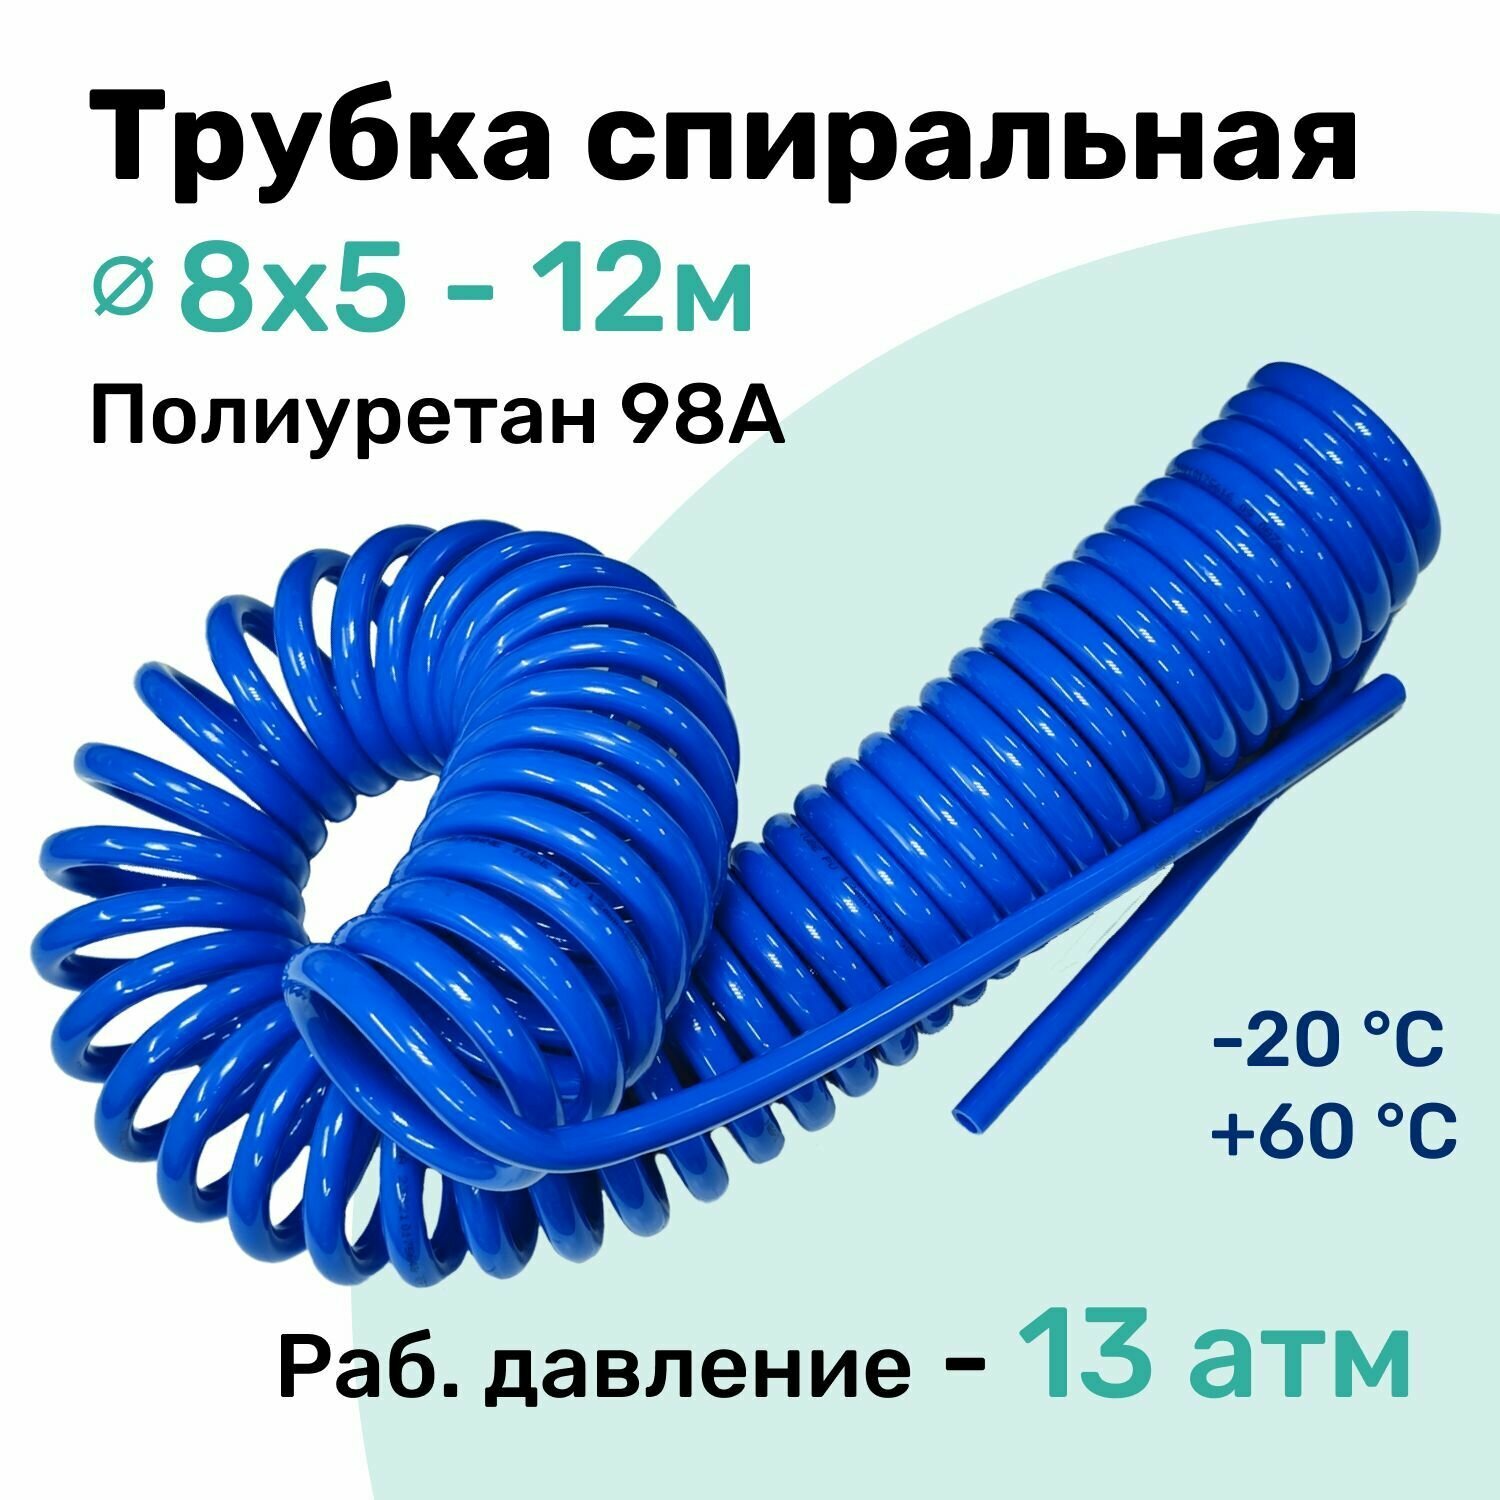 Пневмотрубка спиральная 8x5мм, полиуретановая PU98A, 12м, 13 атм, Синий, Шланг спиральный пневматический NBPT